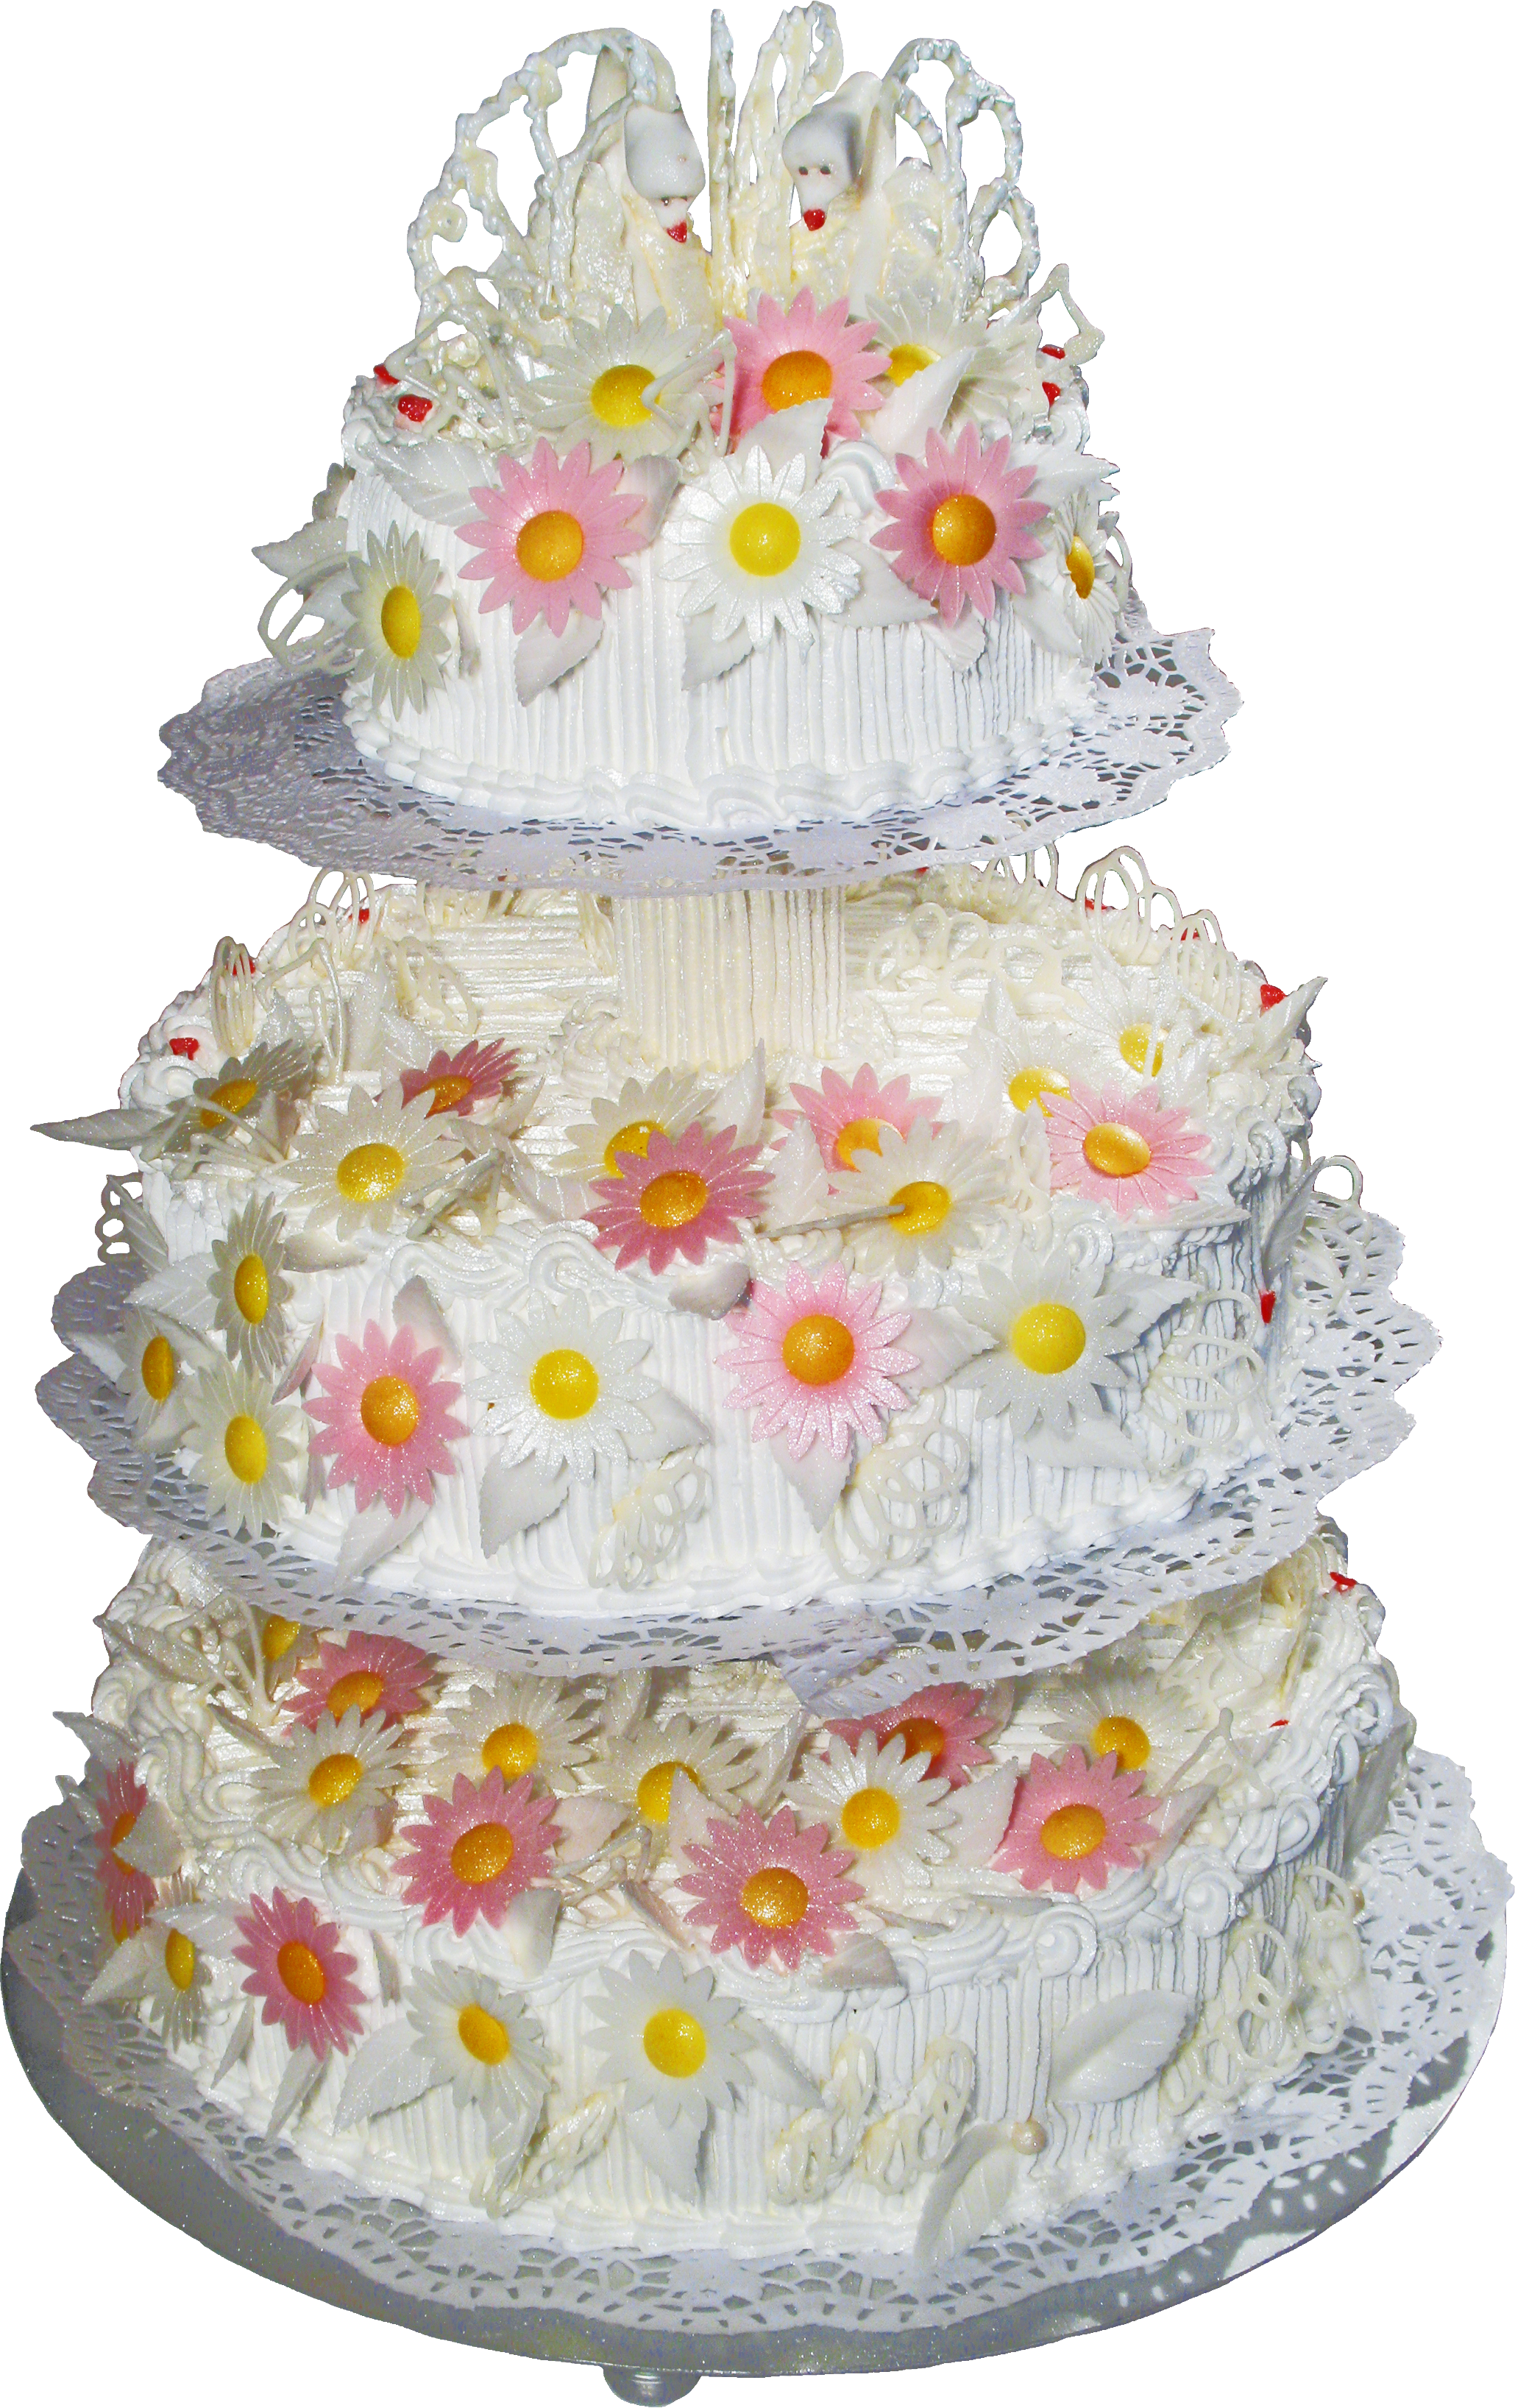 Gâteau de mariage